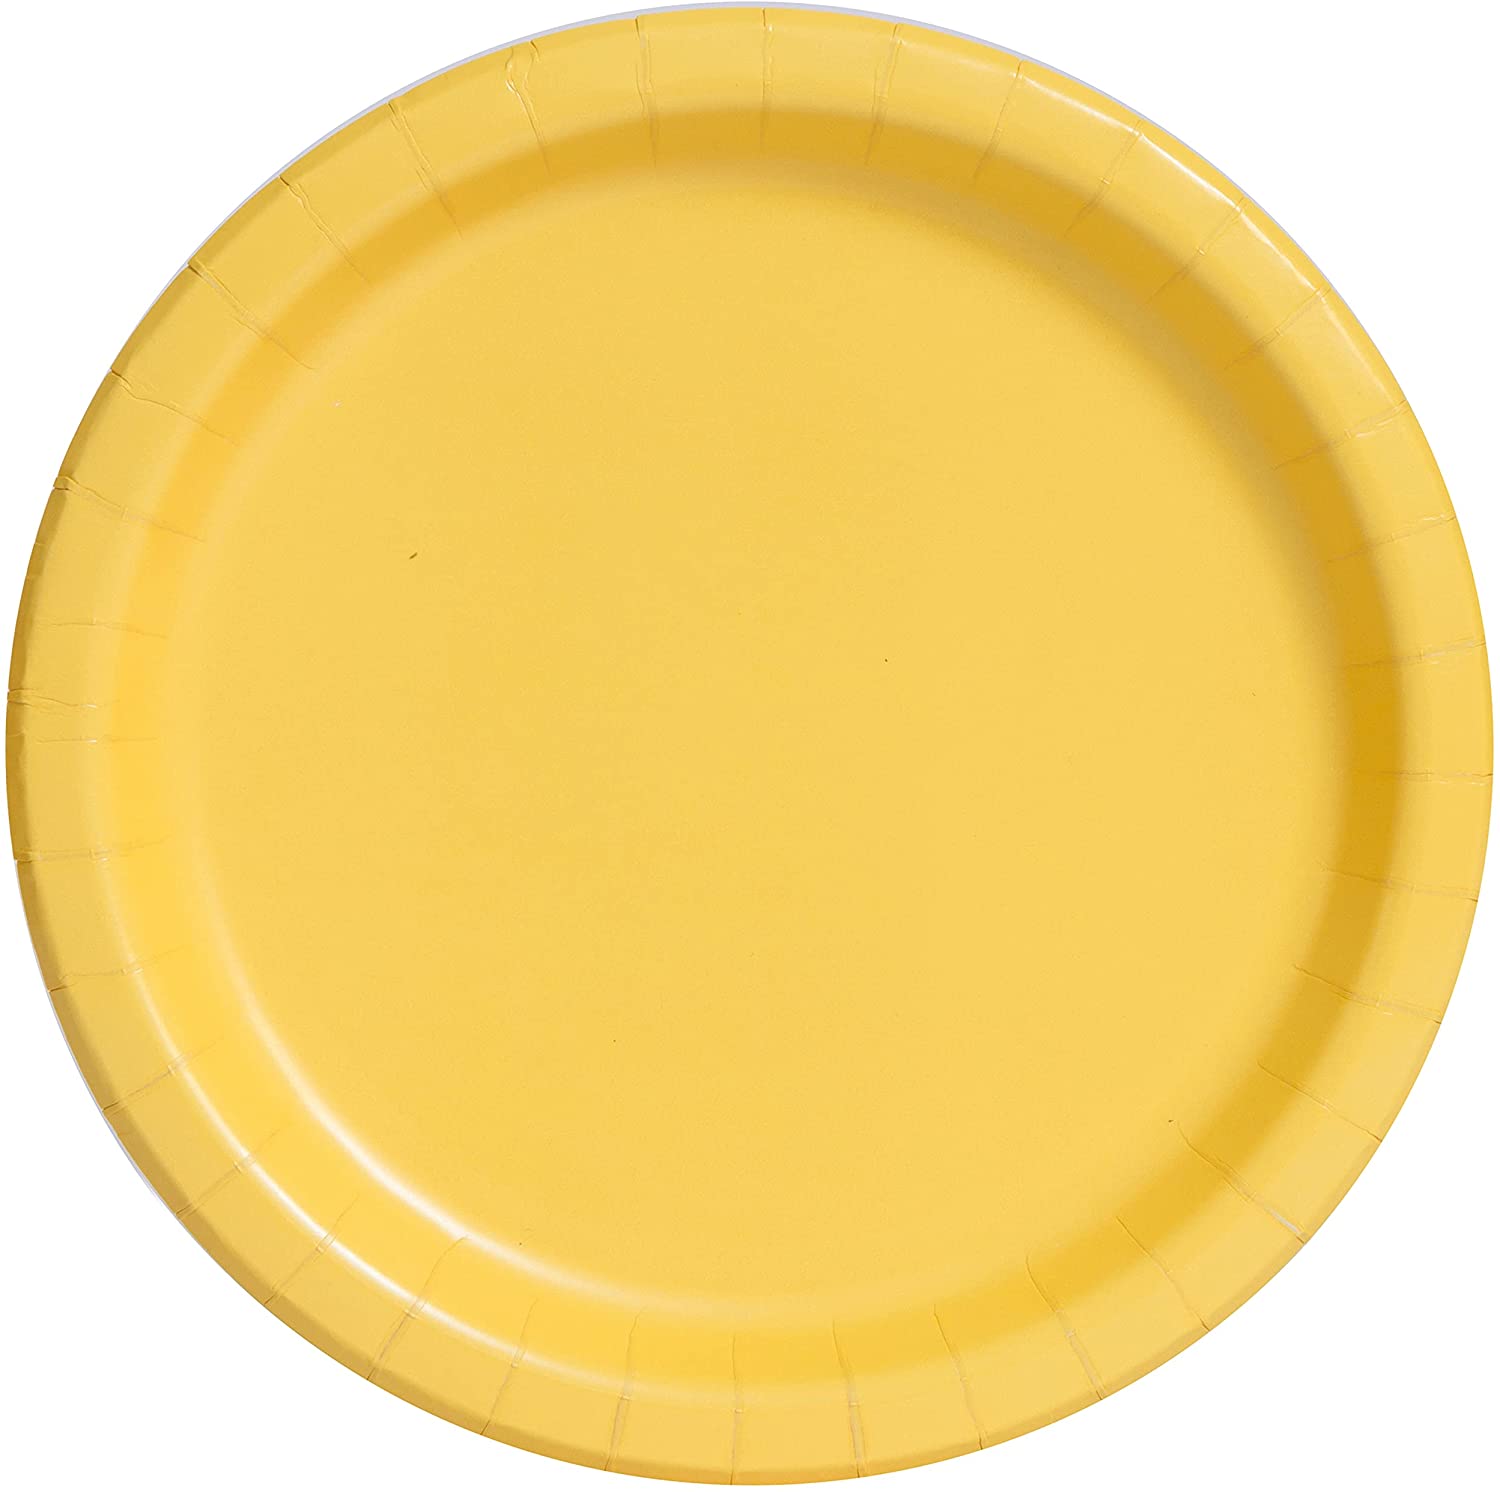 Dishes 22cm Unique - Tan Yellow Unique